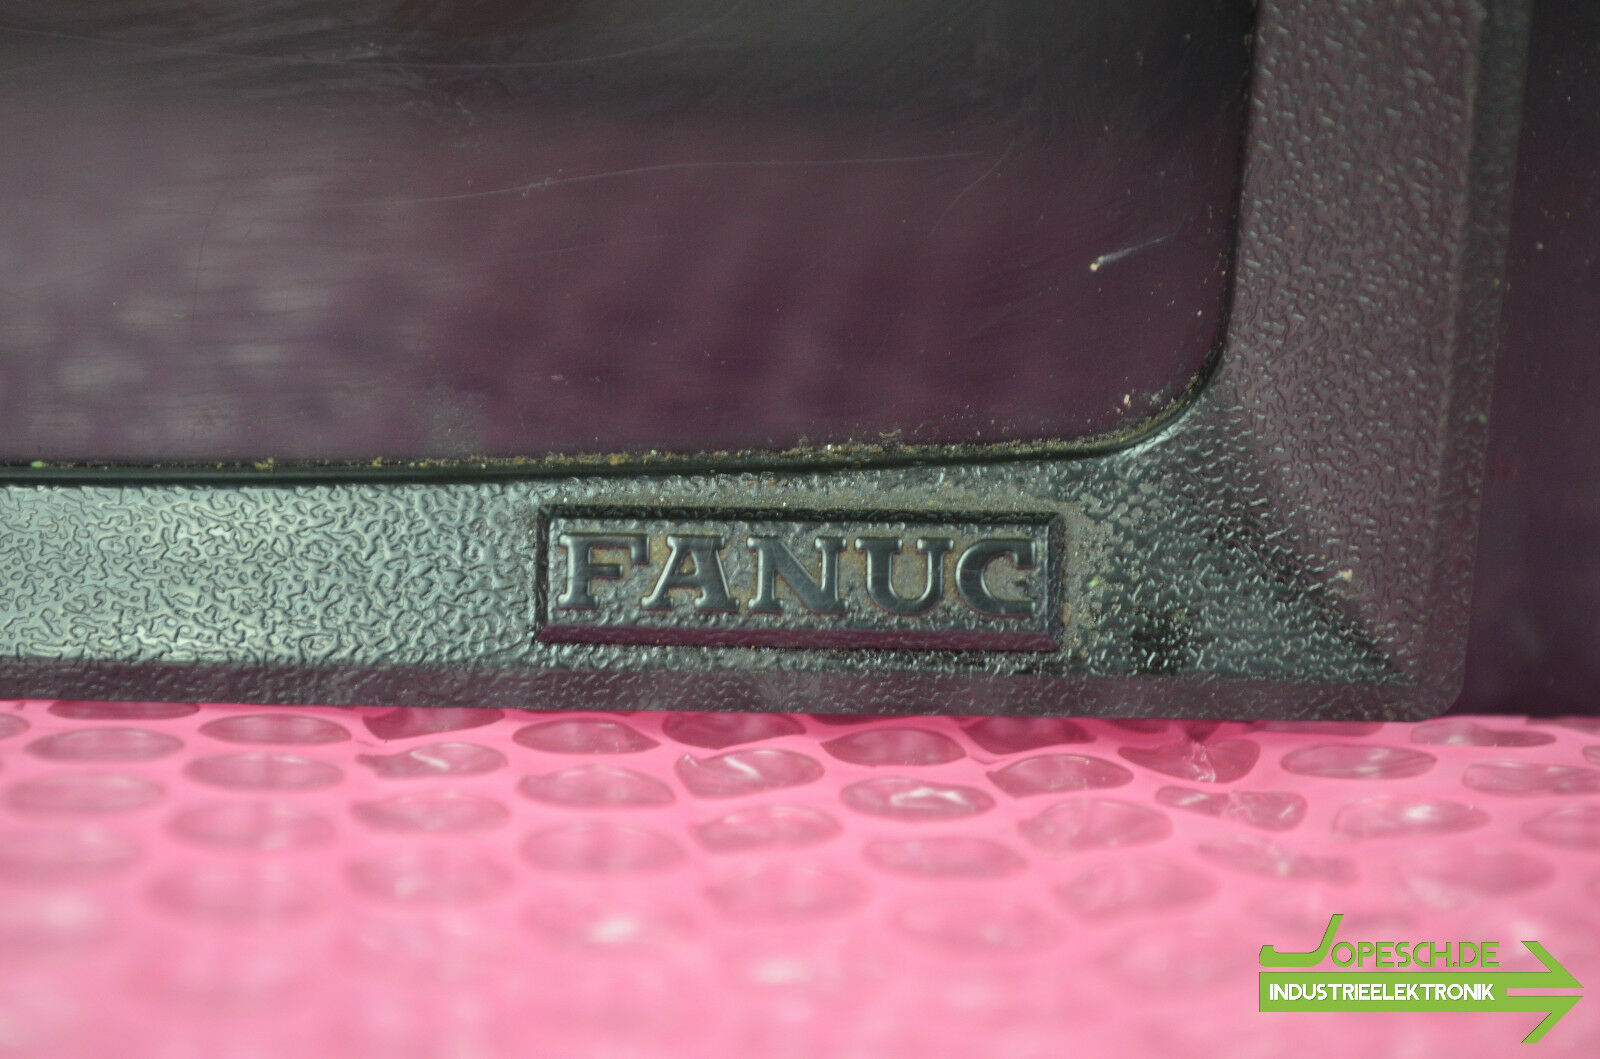 Fujitsu Fanuc Ltd MD1/CRT Unit A02B-0050-C011